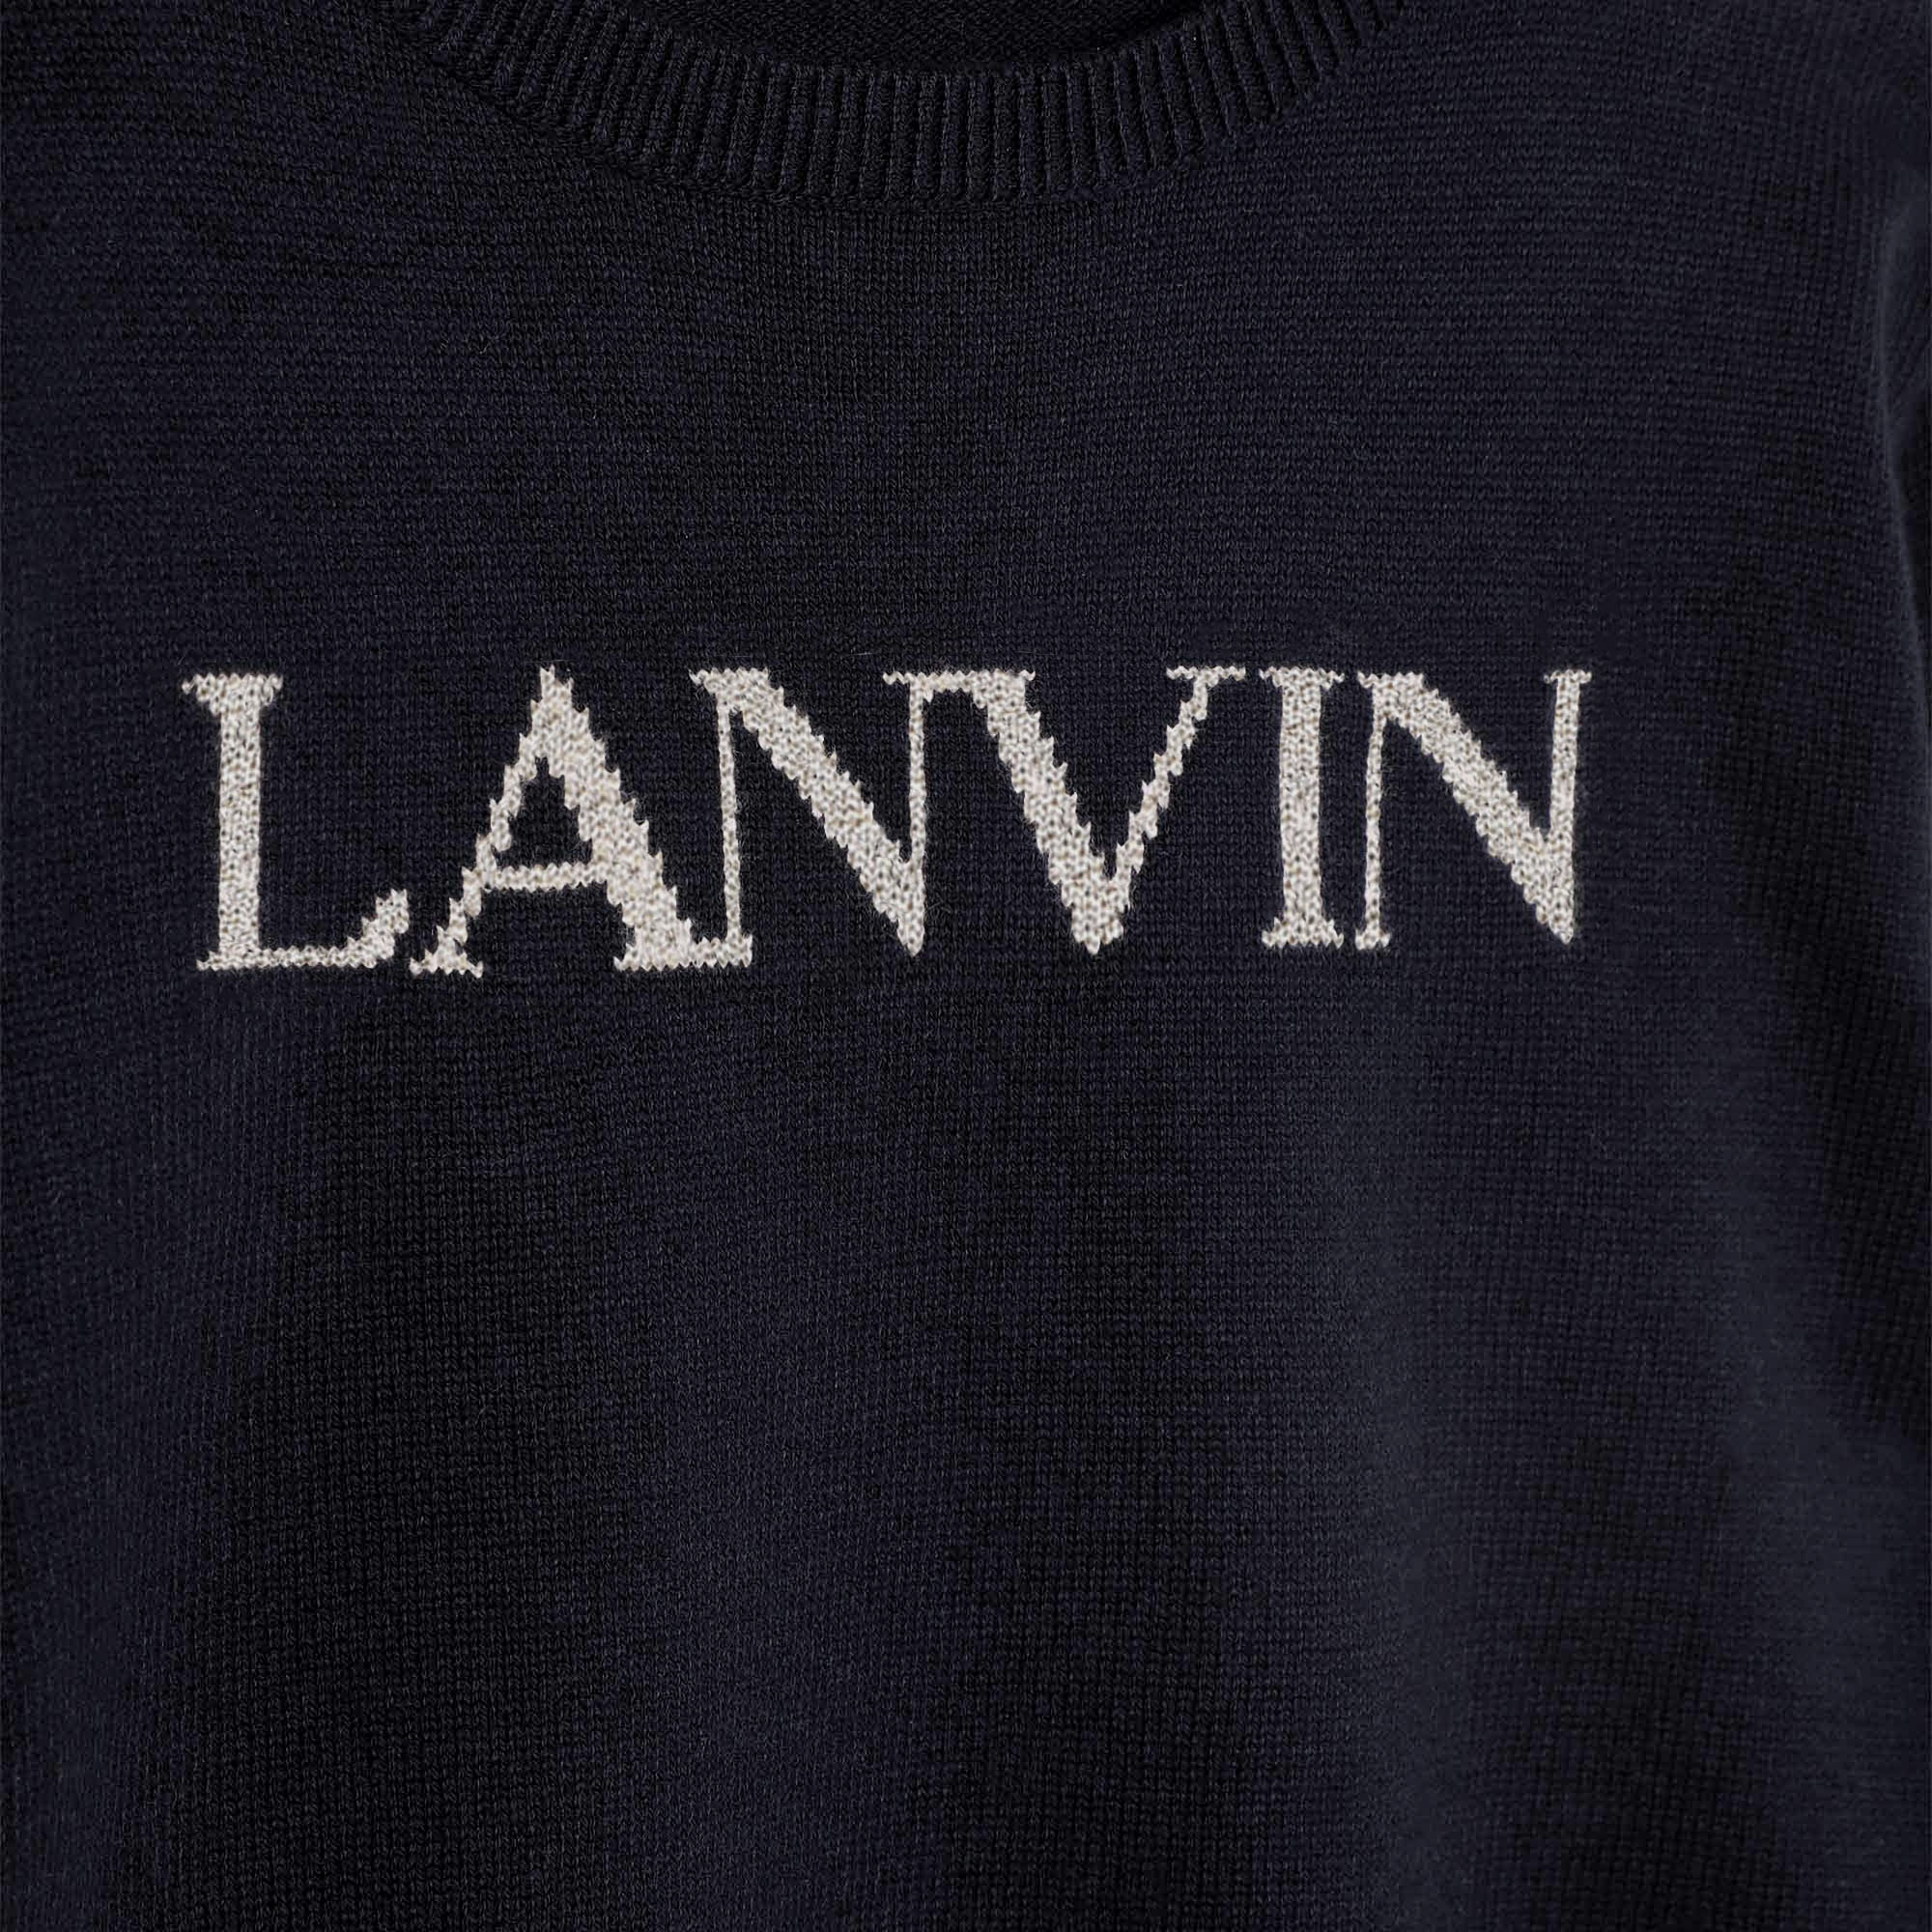 Pull en tricot LANVIN pour FILLE